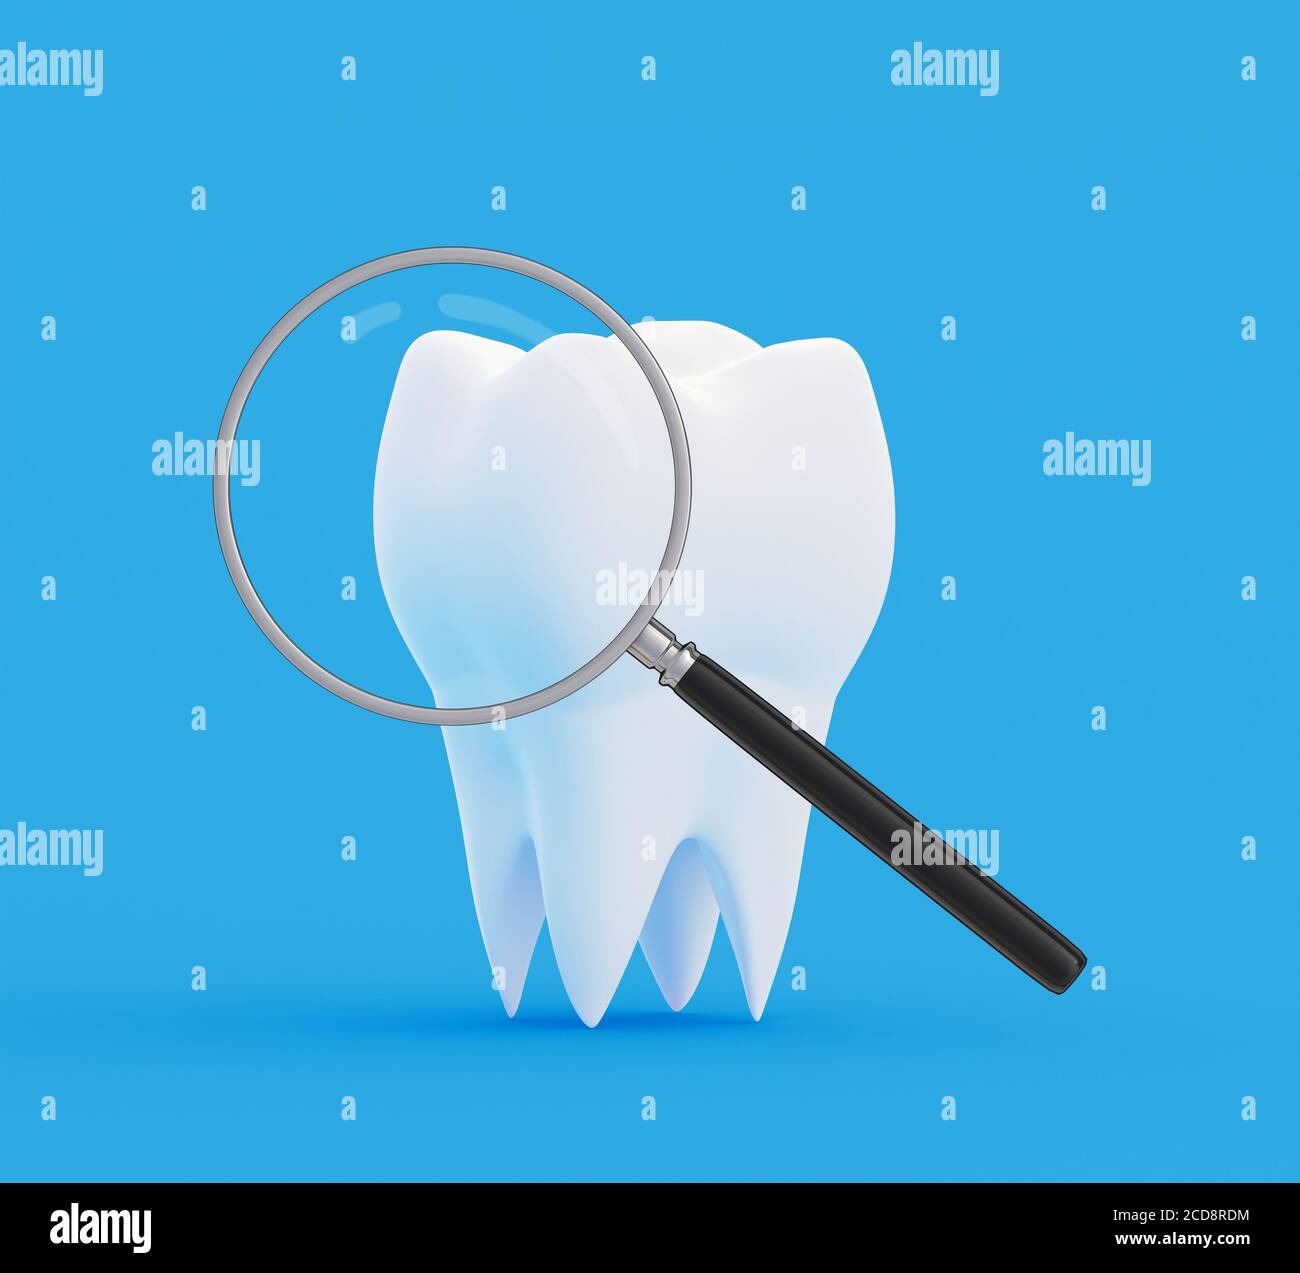 Dent sous une loupe sur fond bleu. Recherche et diagnostic de maladies des dents concept. illustration 3d Banque D'Images